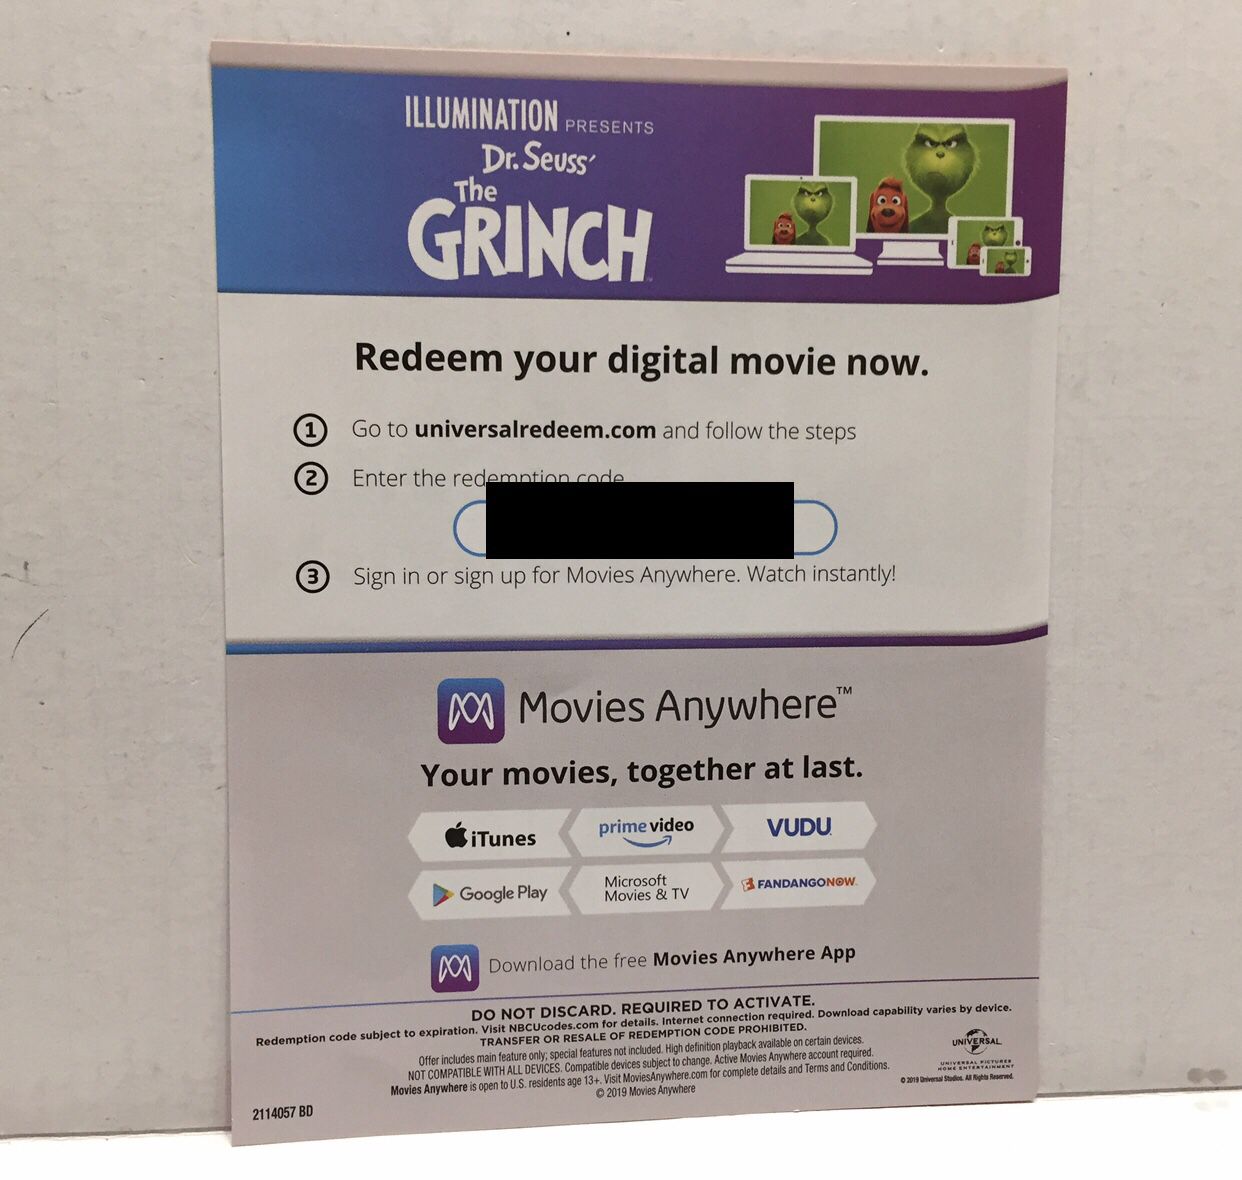 The Grinch Digital Movie Redemption Code